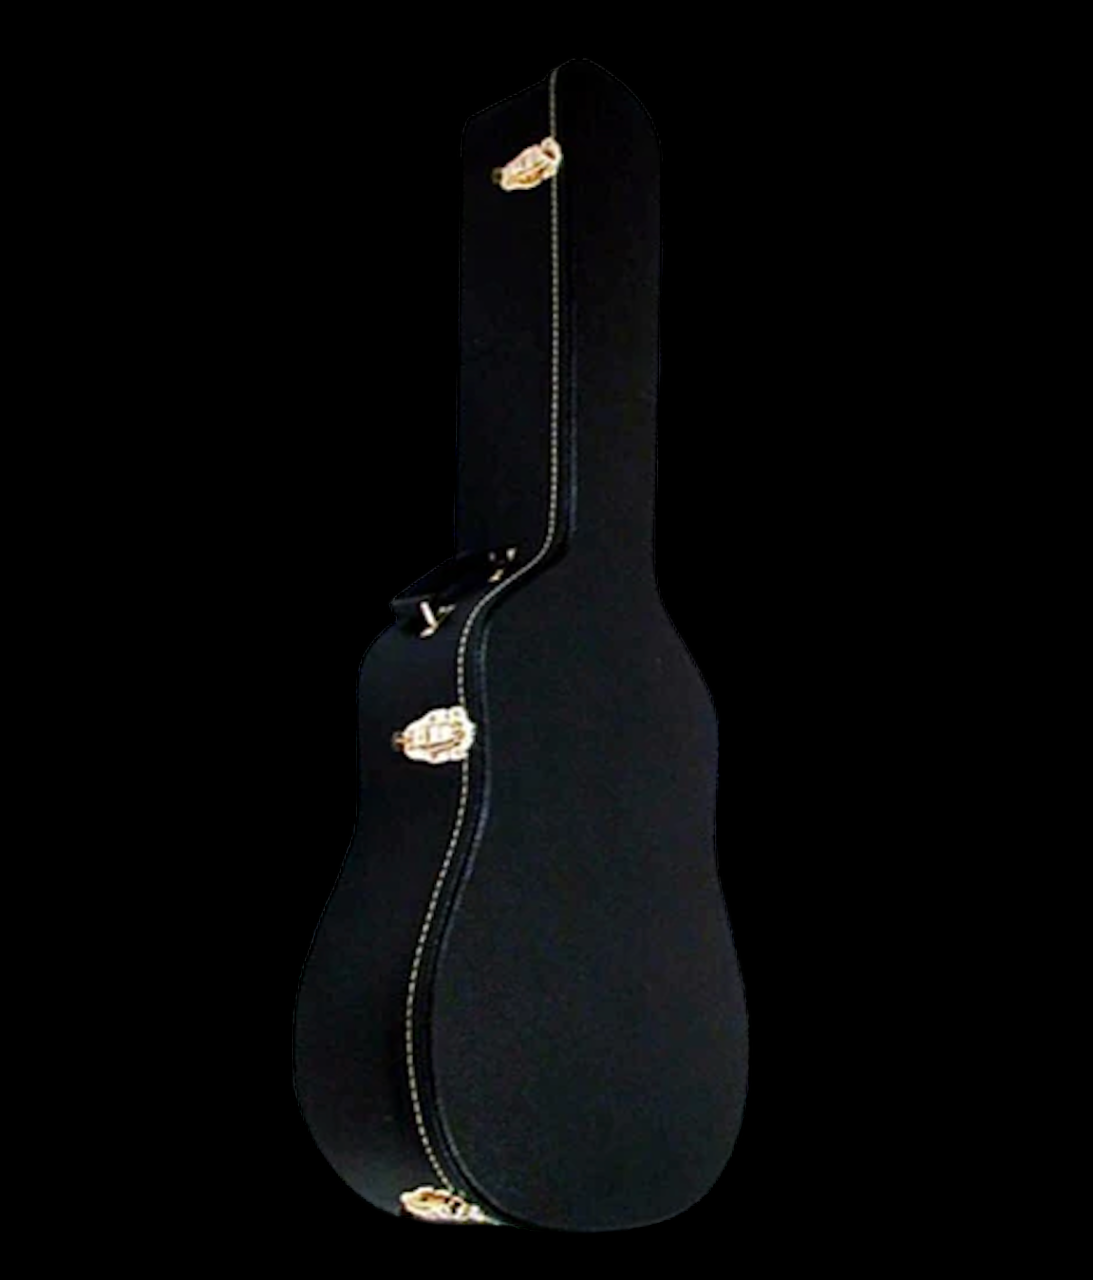 Boblen HSN Hardshell Classical Guitar Case